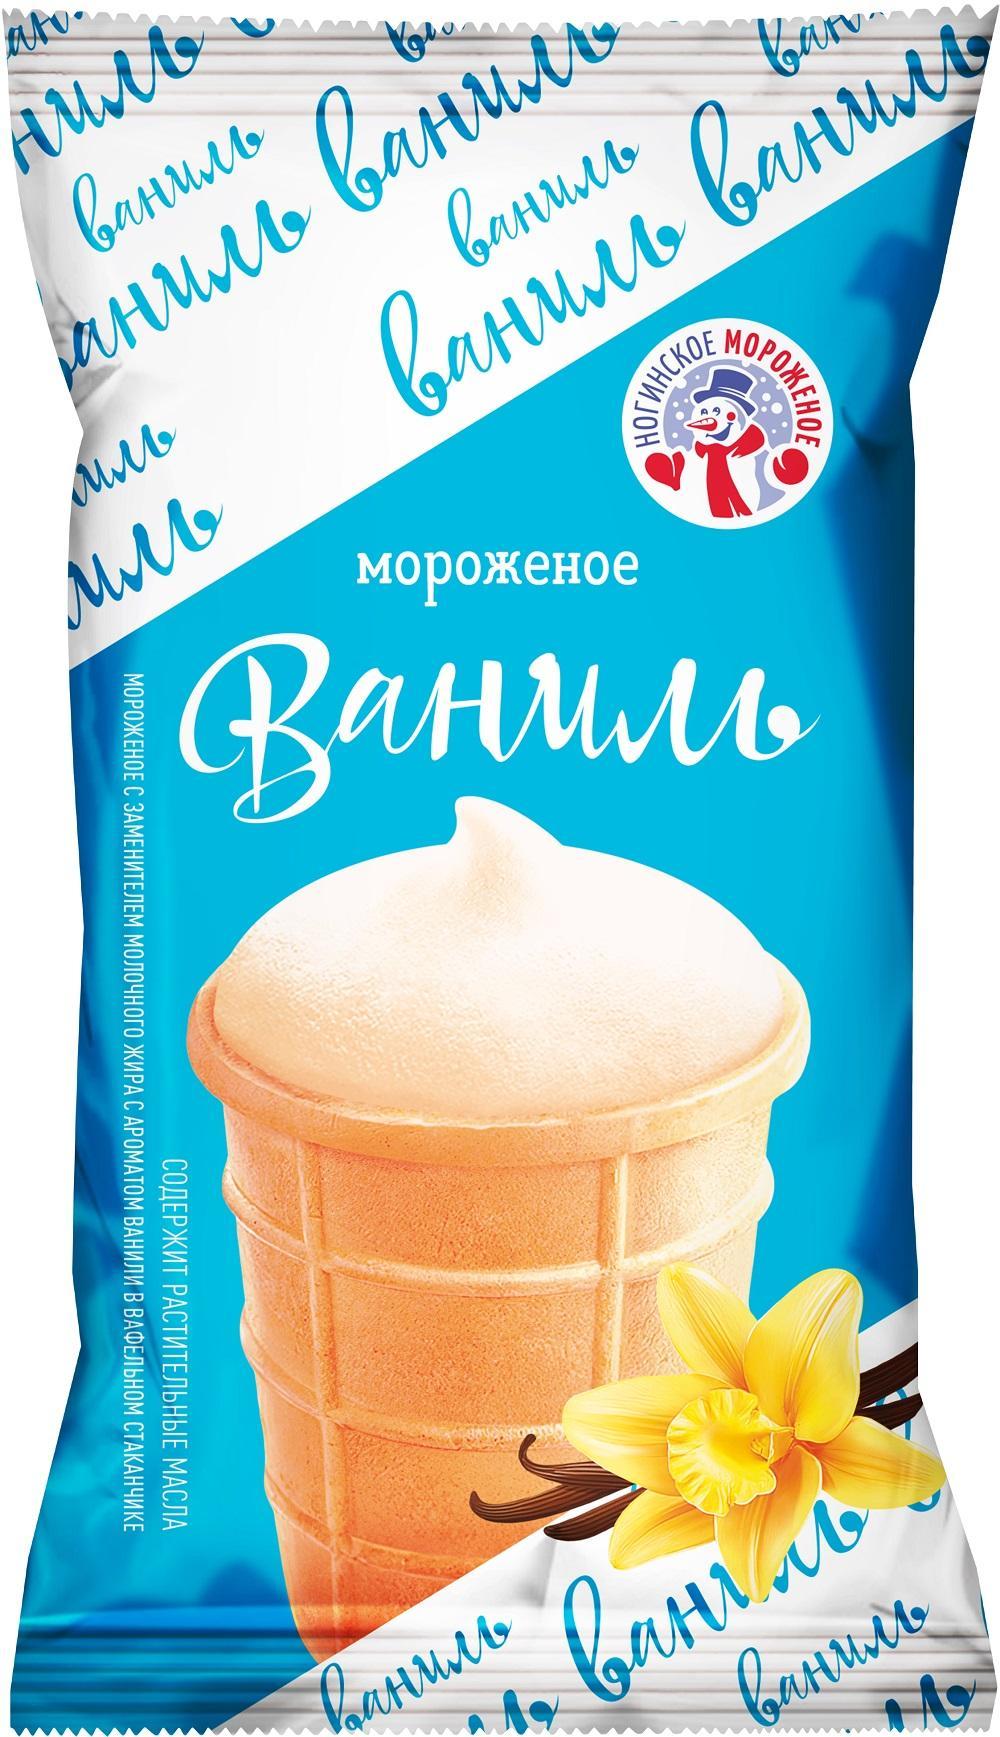 Мороженое Ногинское мороженое ванильное в вафельном стаканчике 8% 70 гр., флоу-пак